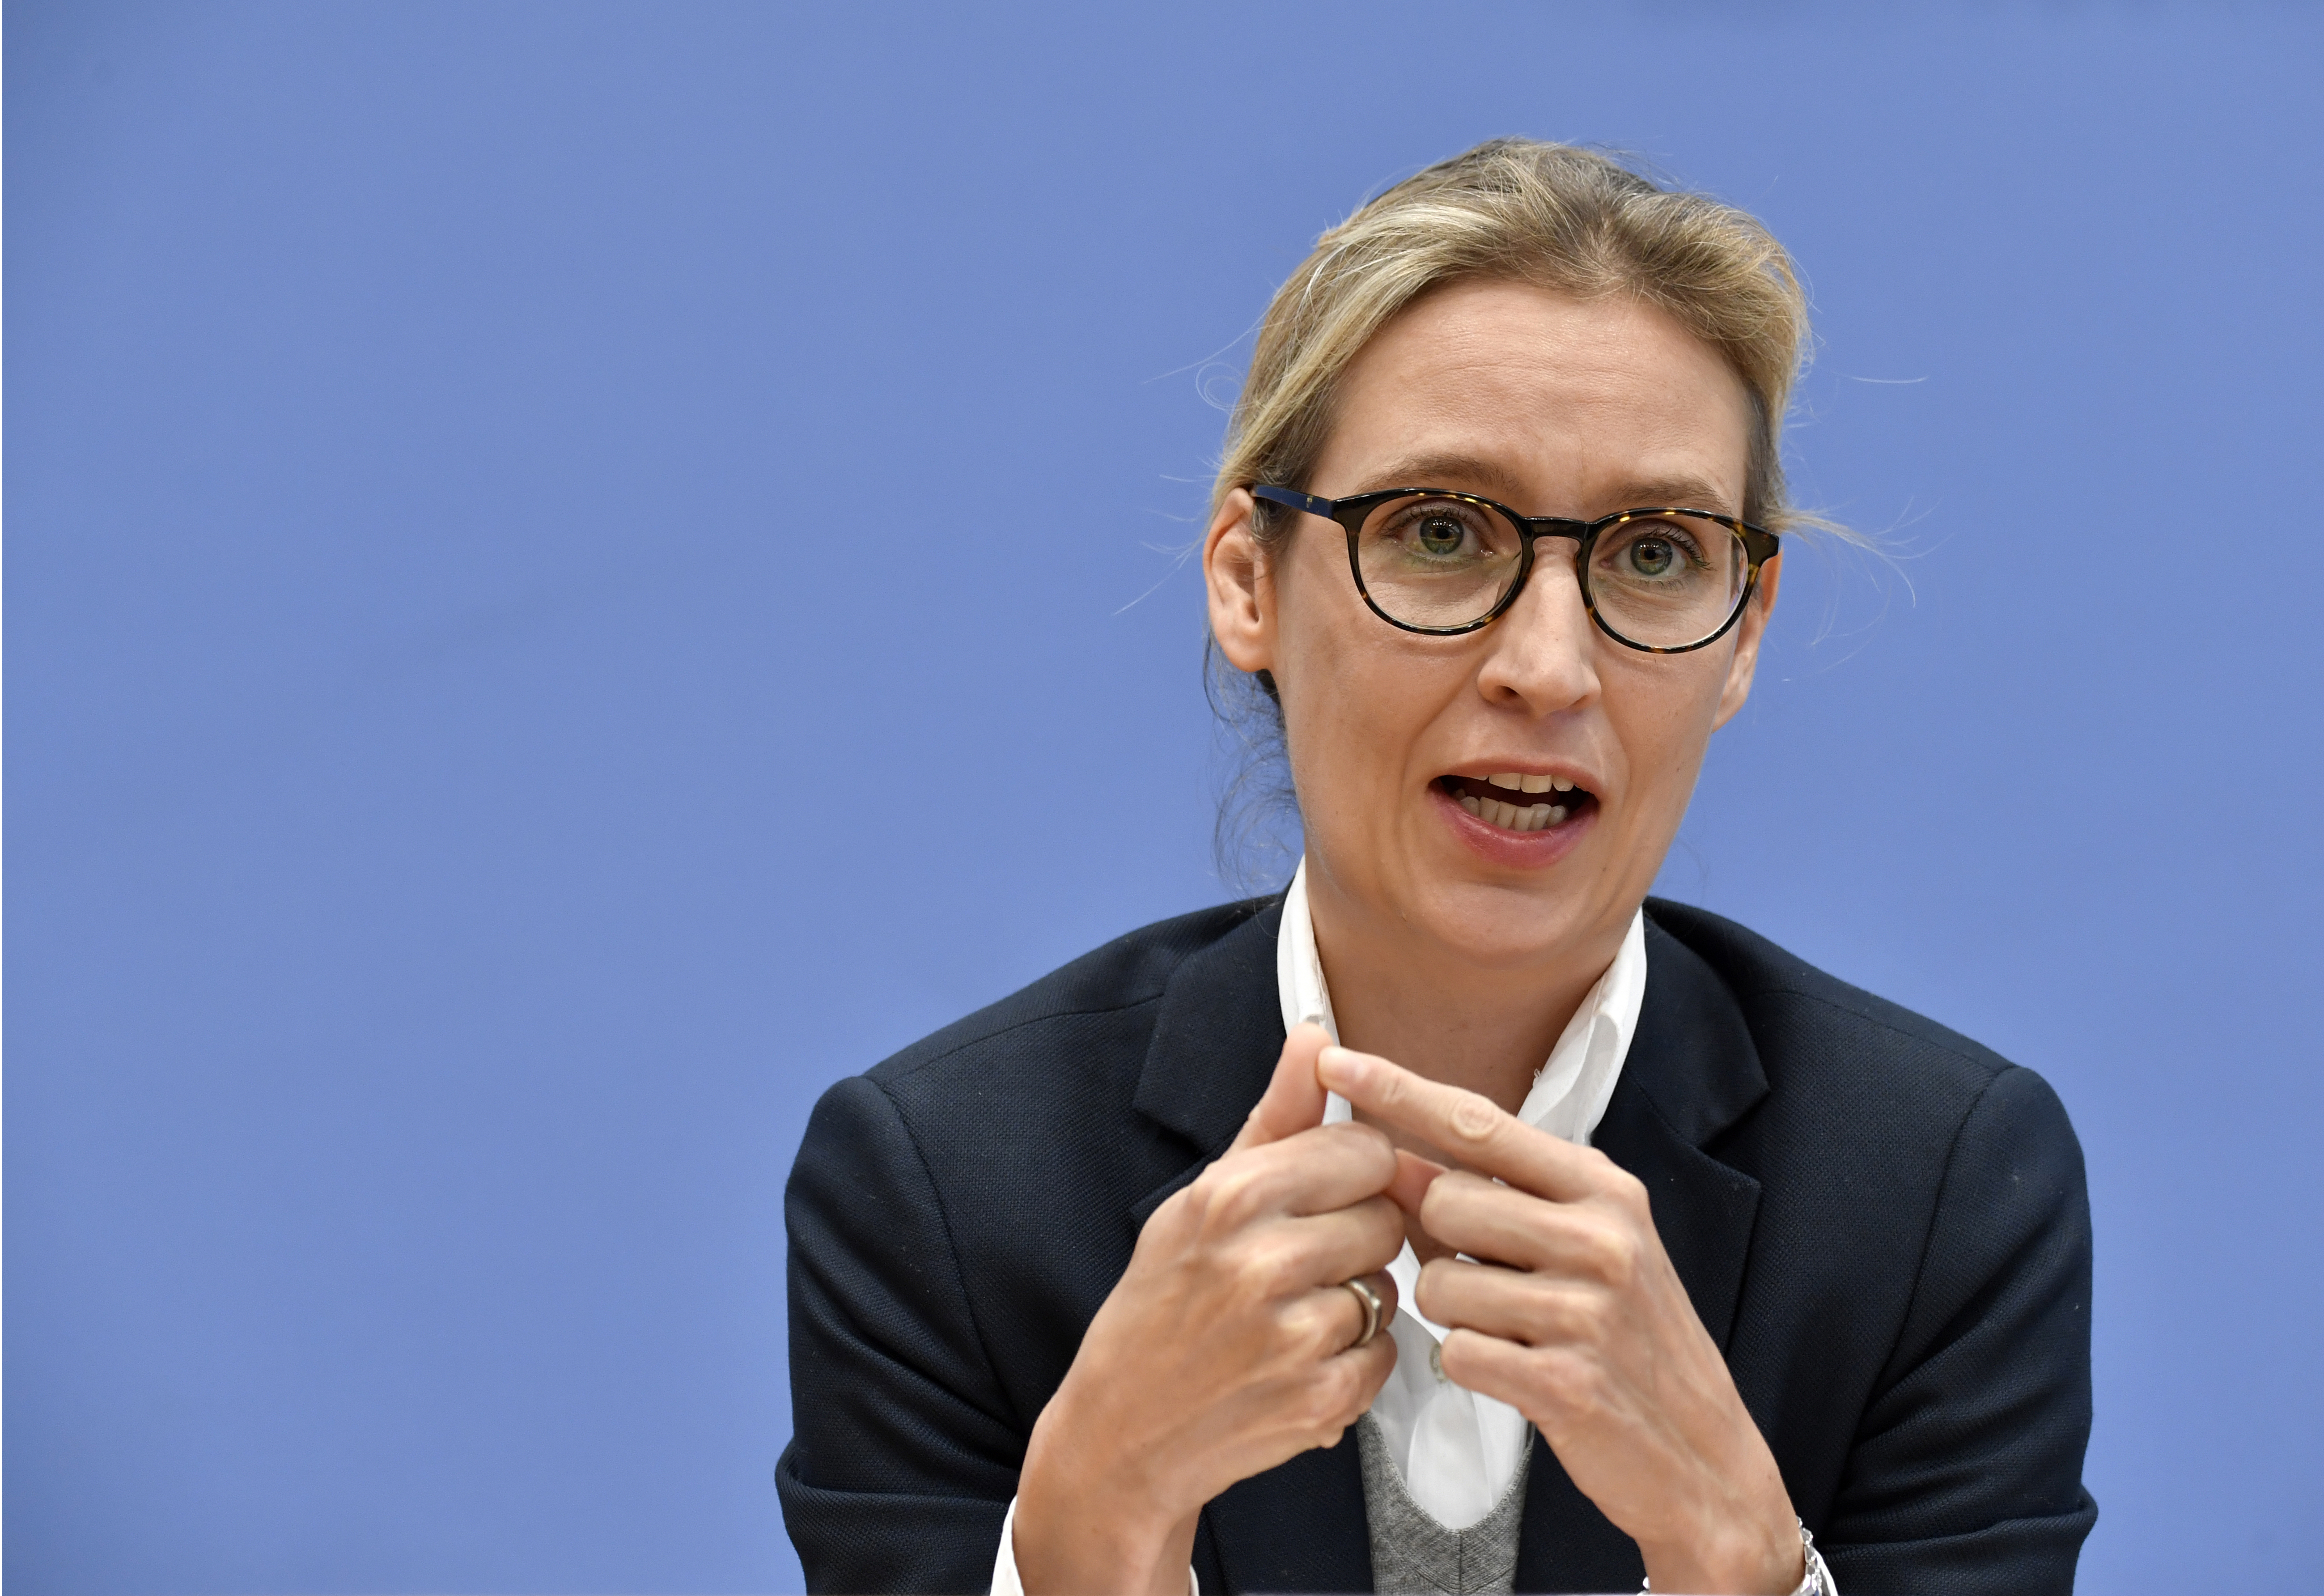 Alice Weidel, líder parlamentaria de Alternativa para Alemania, el partido alemán de extrema derecha que está en ascenso (AFP PHOTO / John MACDOUGALL)